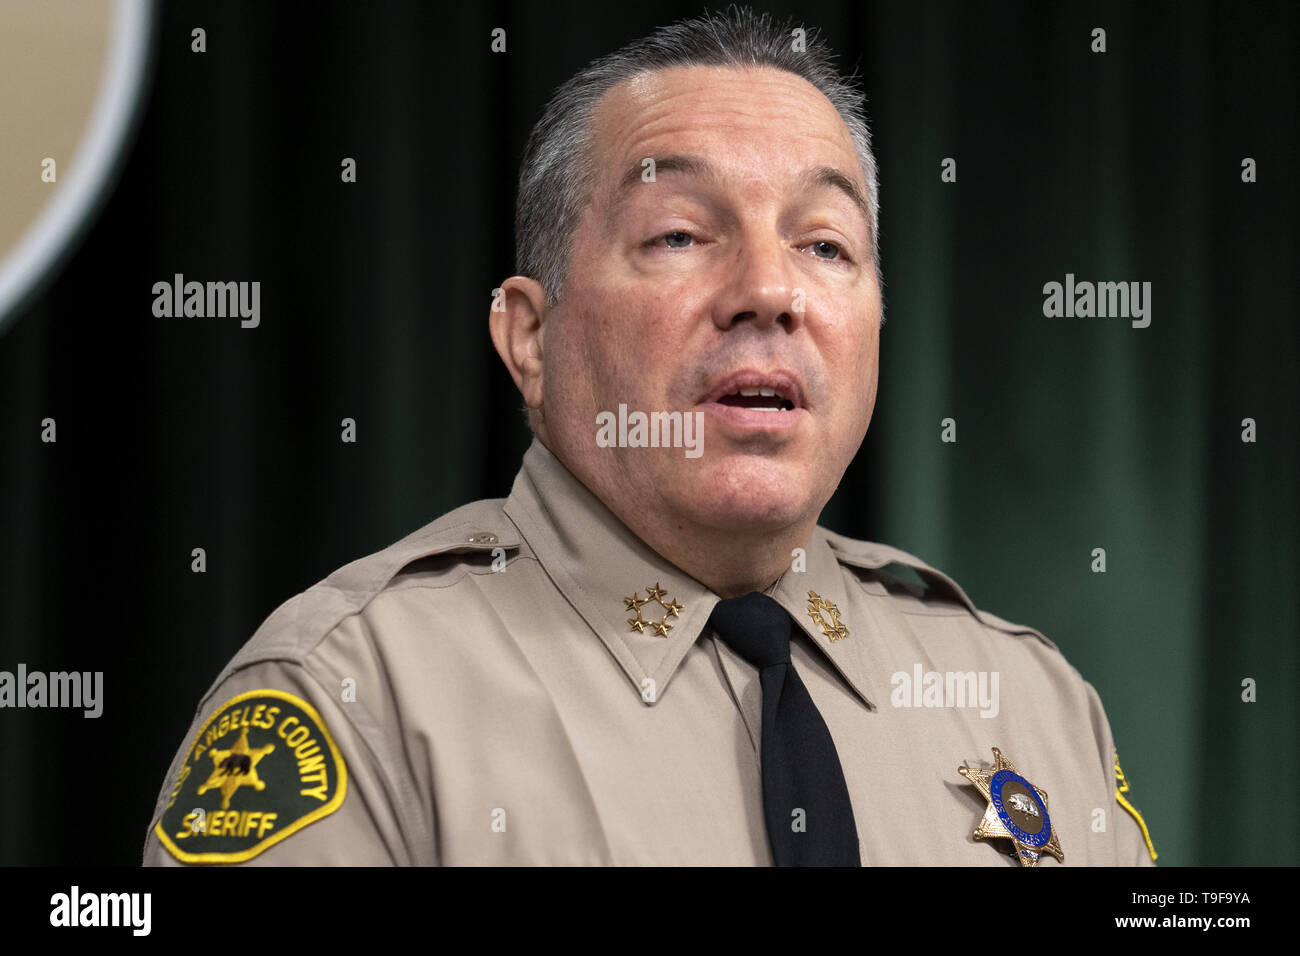 Los Angeles, CA, USA. Feb 27, 2019. Sheriff Alex Villanueva vu parler aux médias lors d'une conférence de presse à Los Angeles. Ronen Crédit : Tivony SOPA/Images/ZUMA/Alamy Fil Live News Banque D'Images